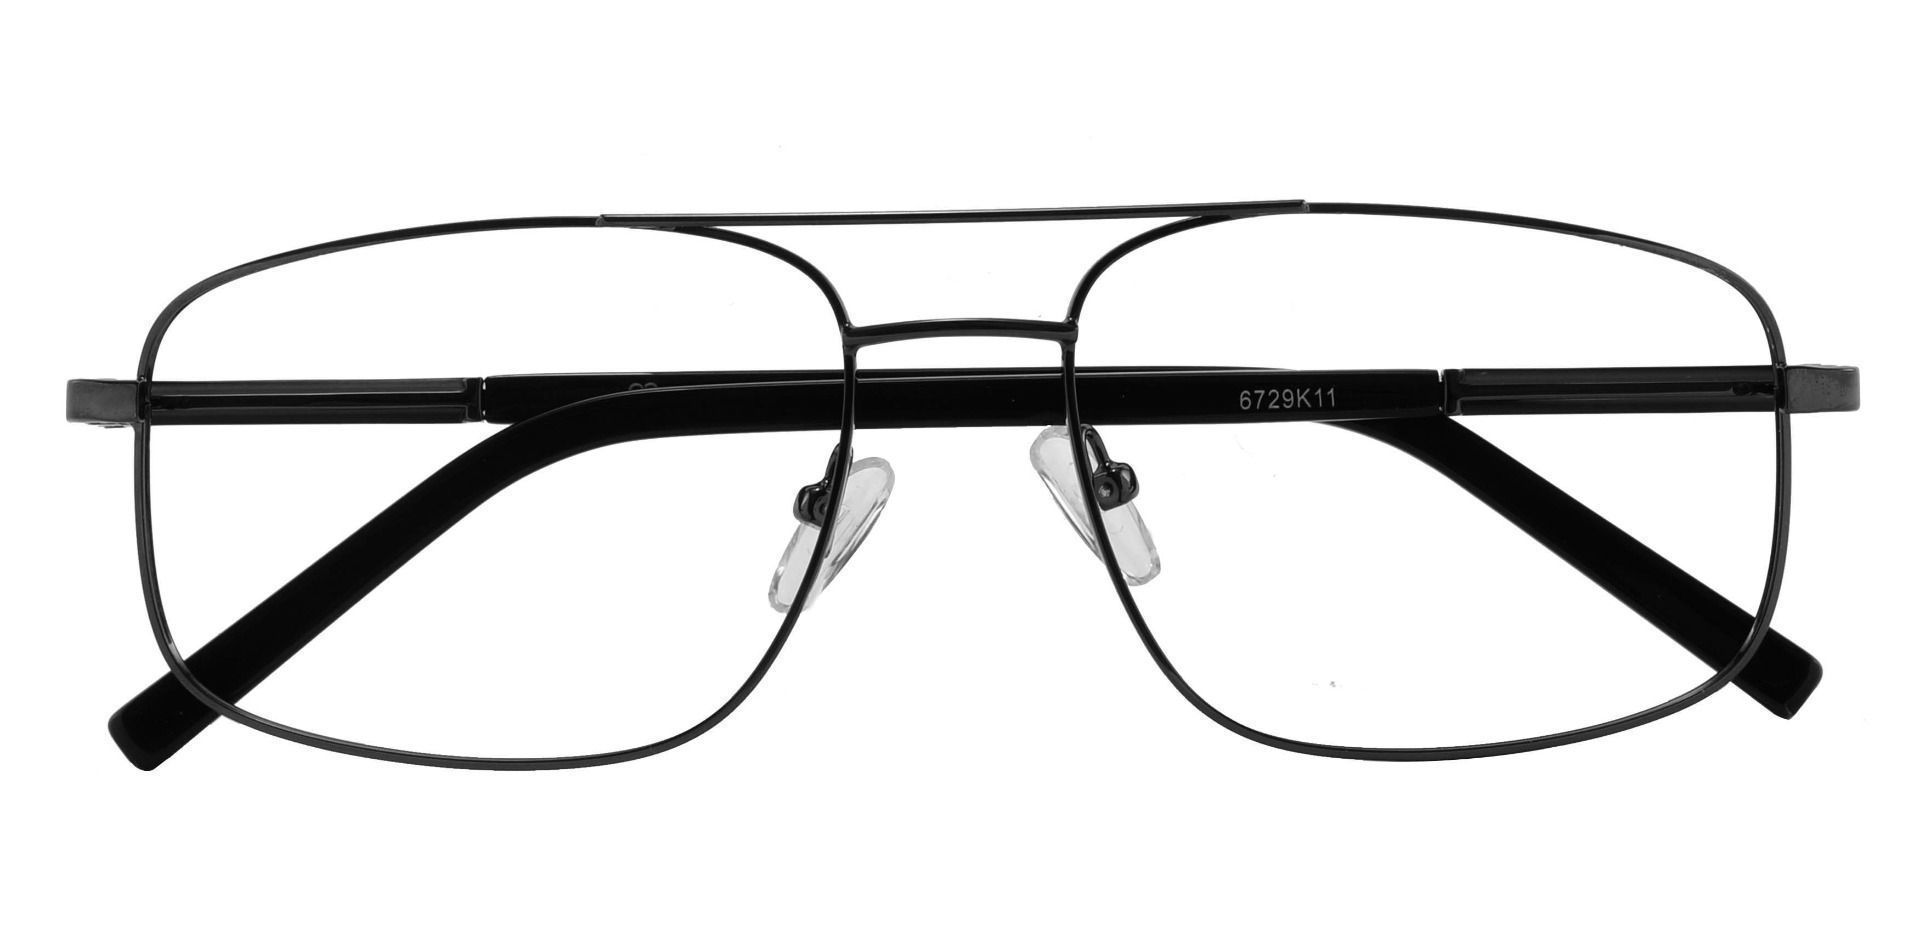 Davenport Aviator Non-Rx Glasses - Black